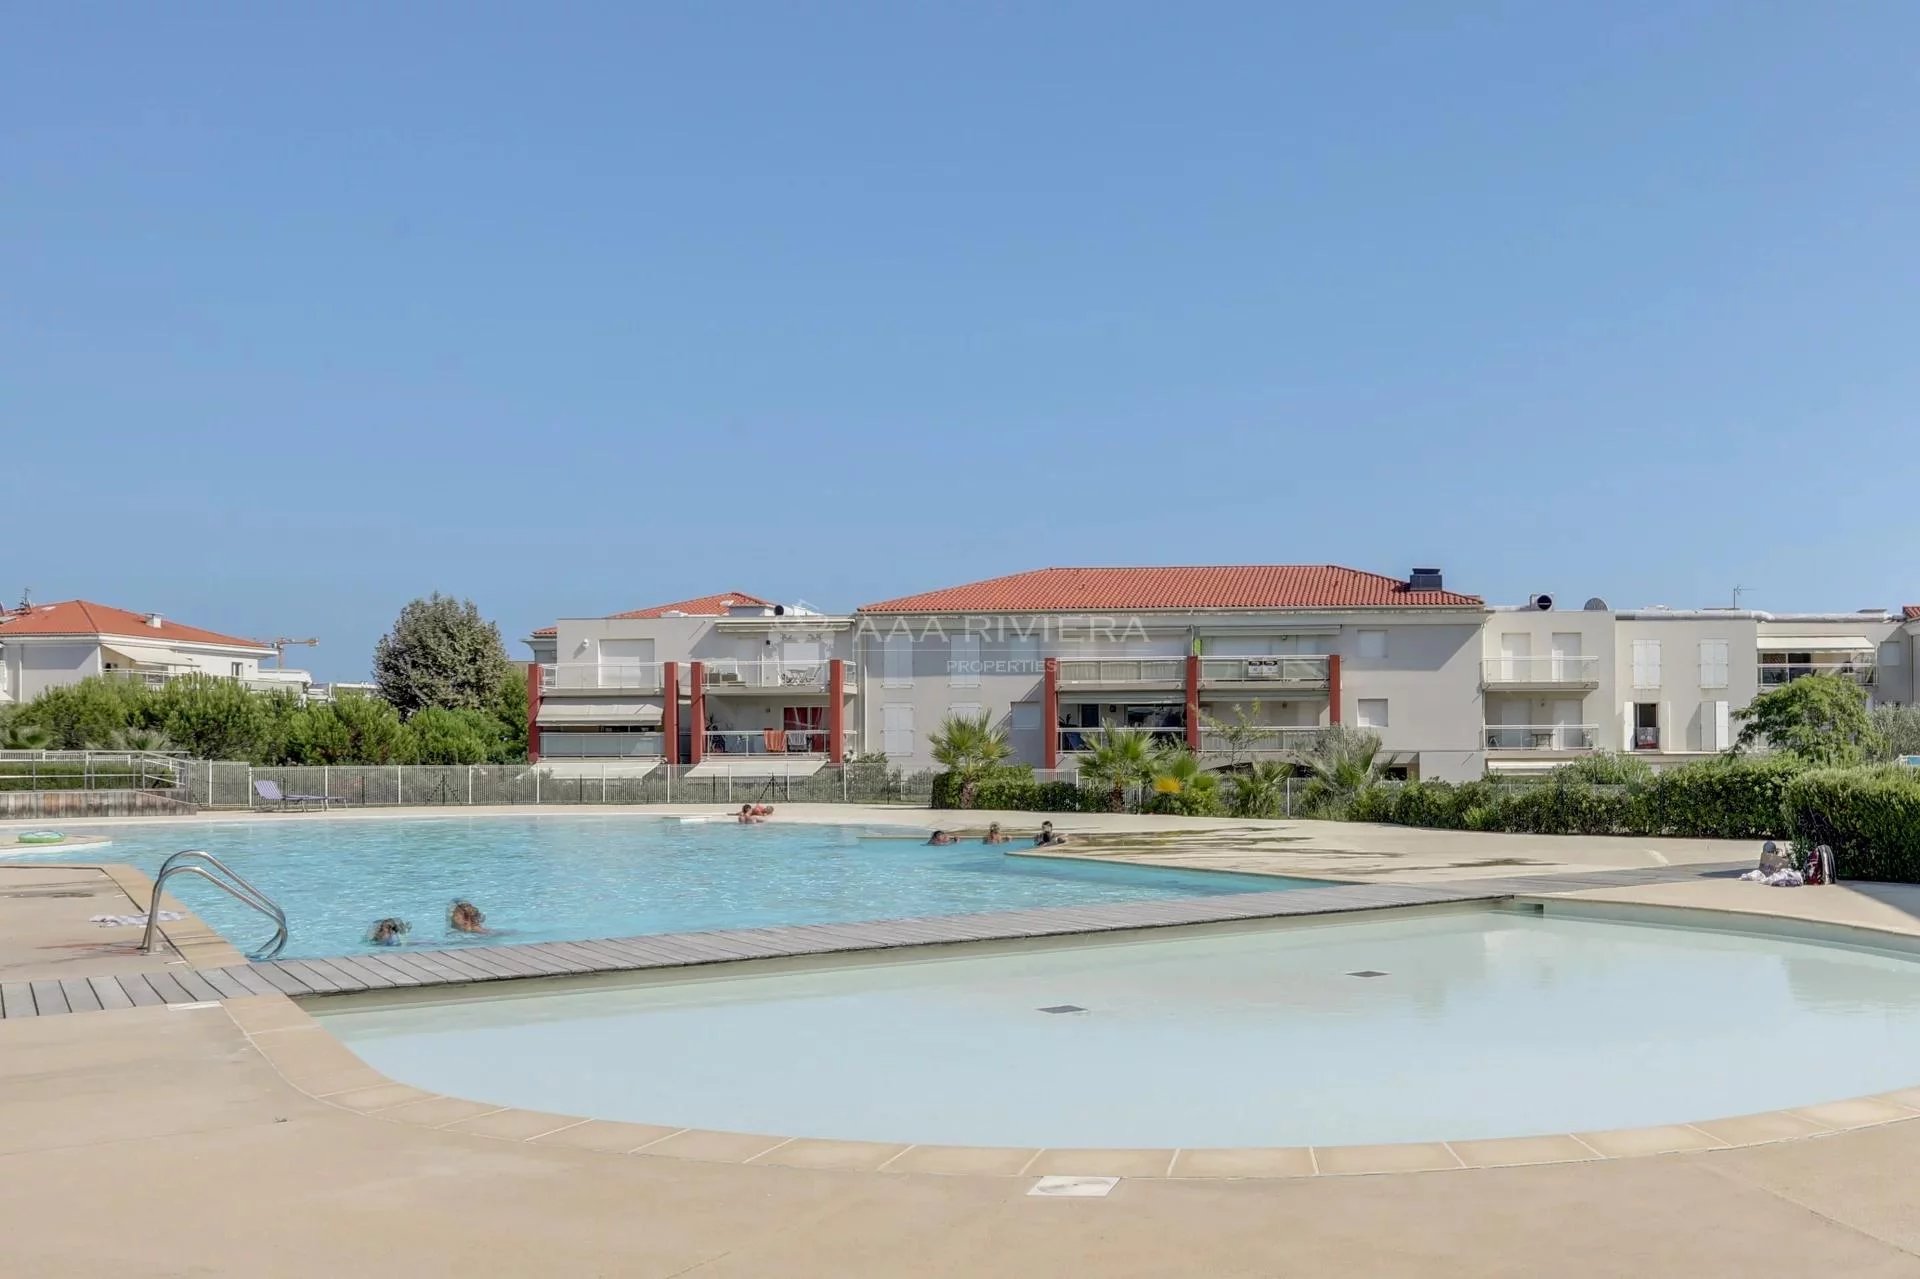 EXCLUSIVITE - SOUS OFFRE ACCEPTEE Juan les Pins -  Bel appartement 3P dans résidence avec piscine . Accès direct plages